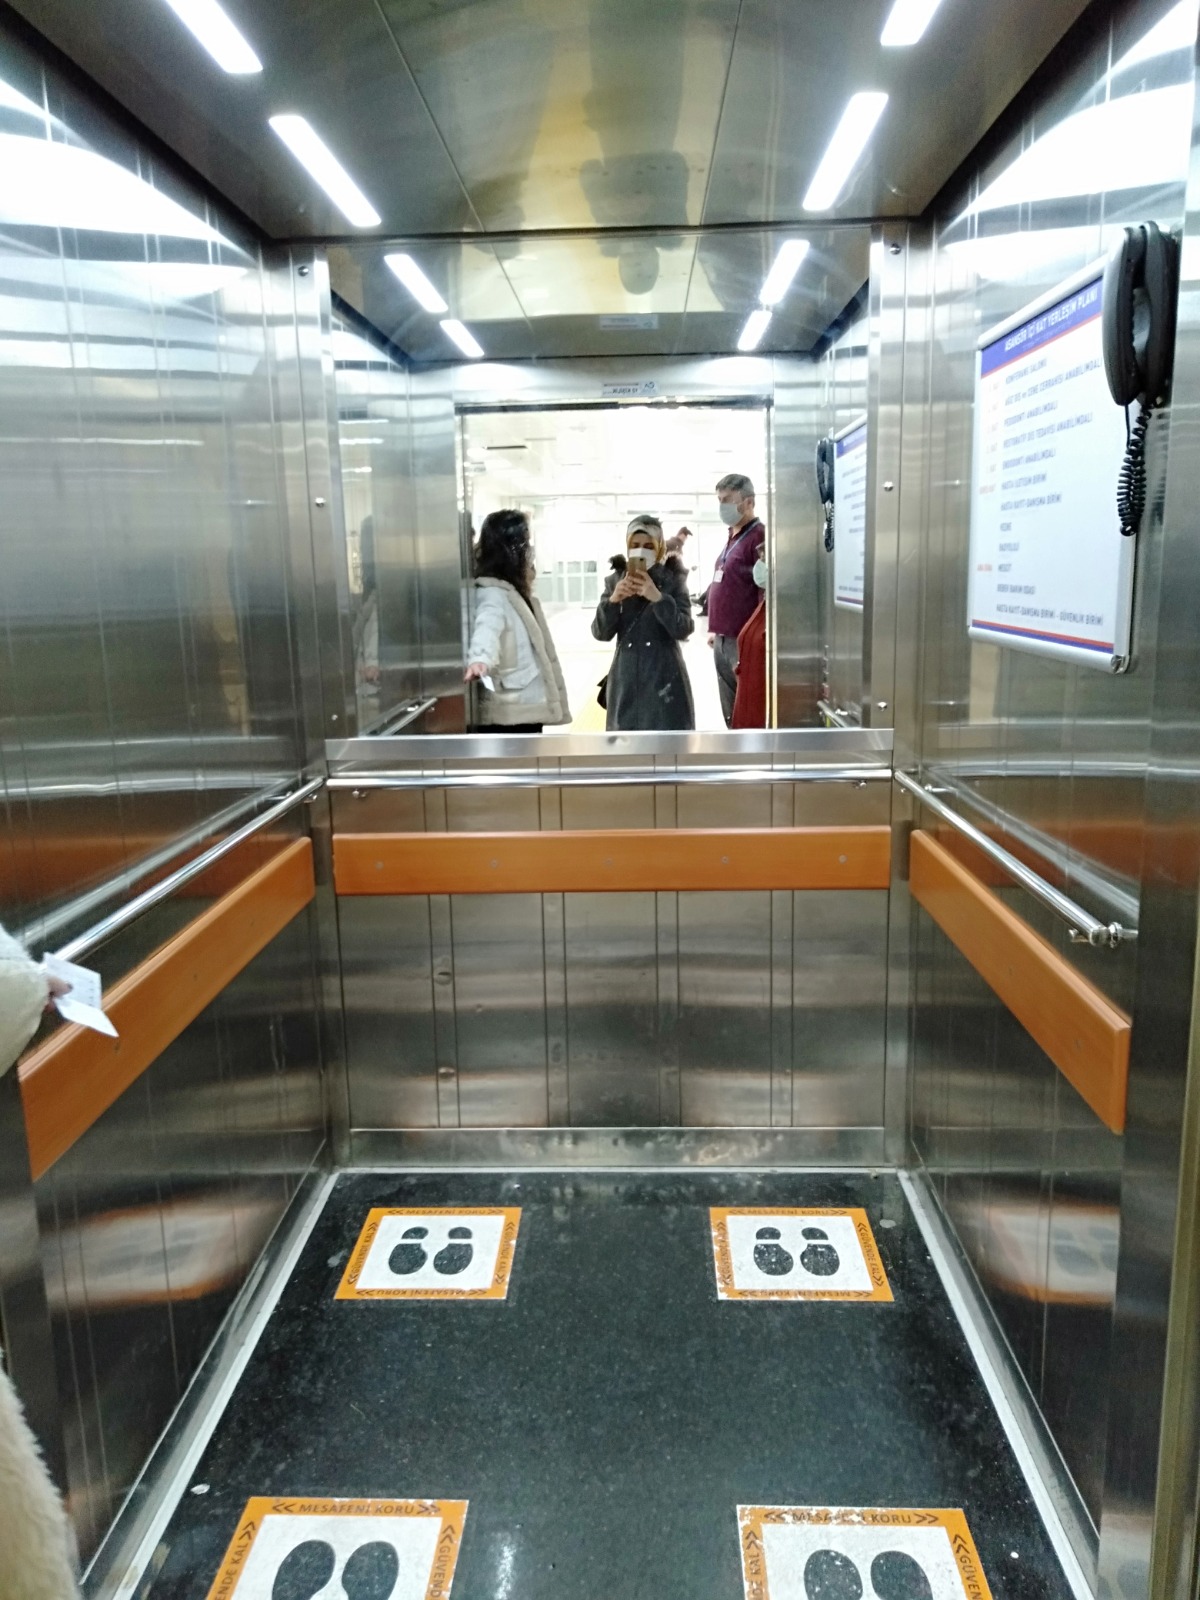 Atatürk Üniversitesi'nden ulaşılabilirlik Örneklerine dair bir fotoğraf karesi. Fotoğrafta bir asansör var.